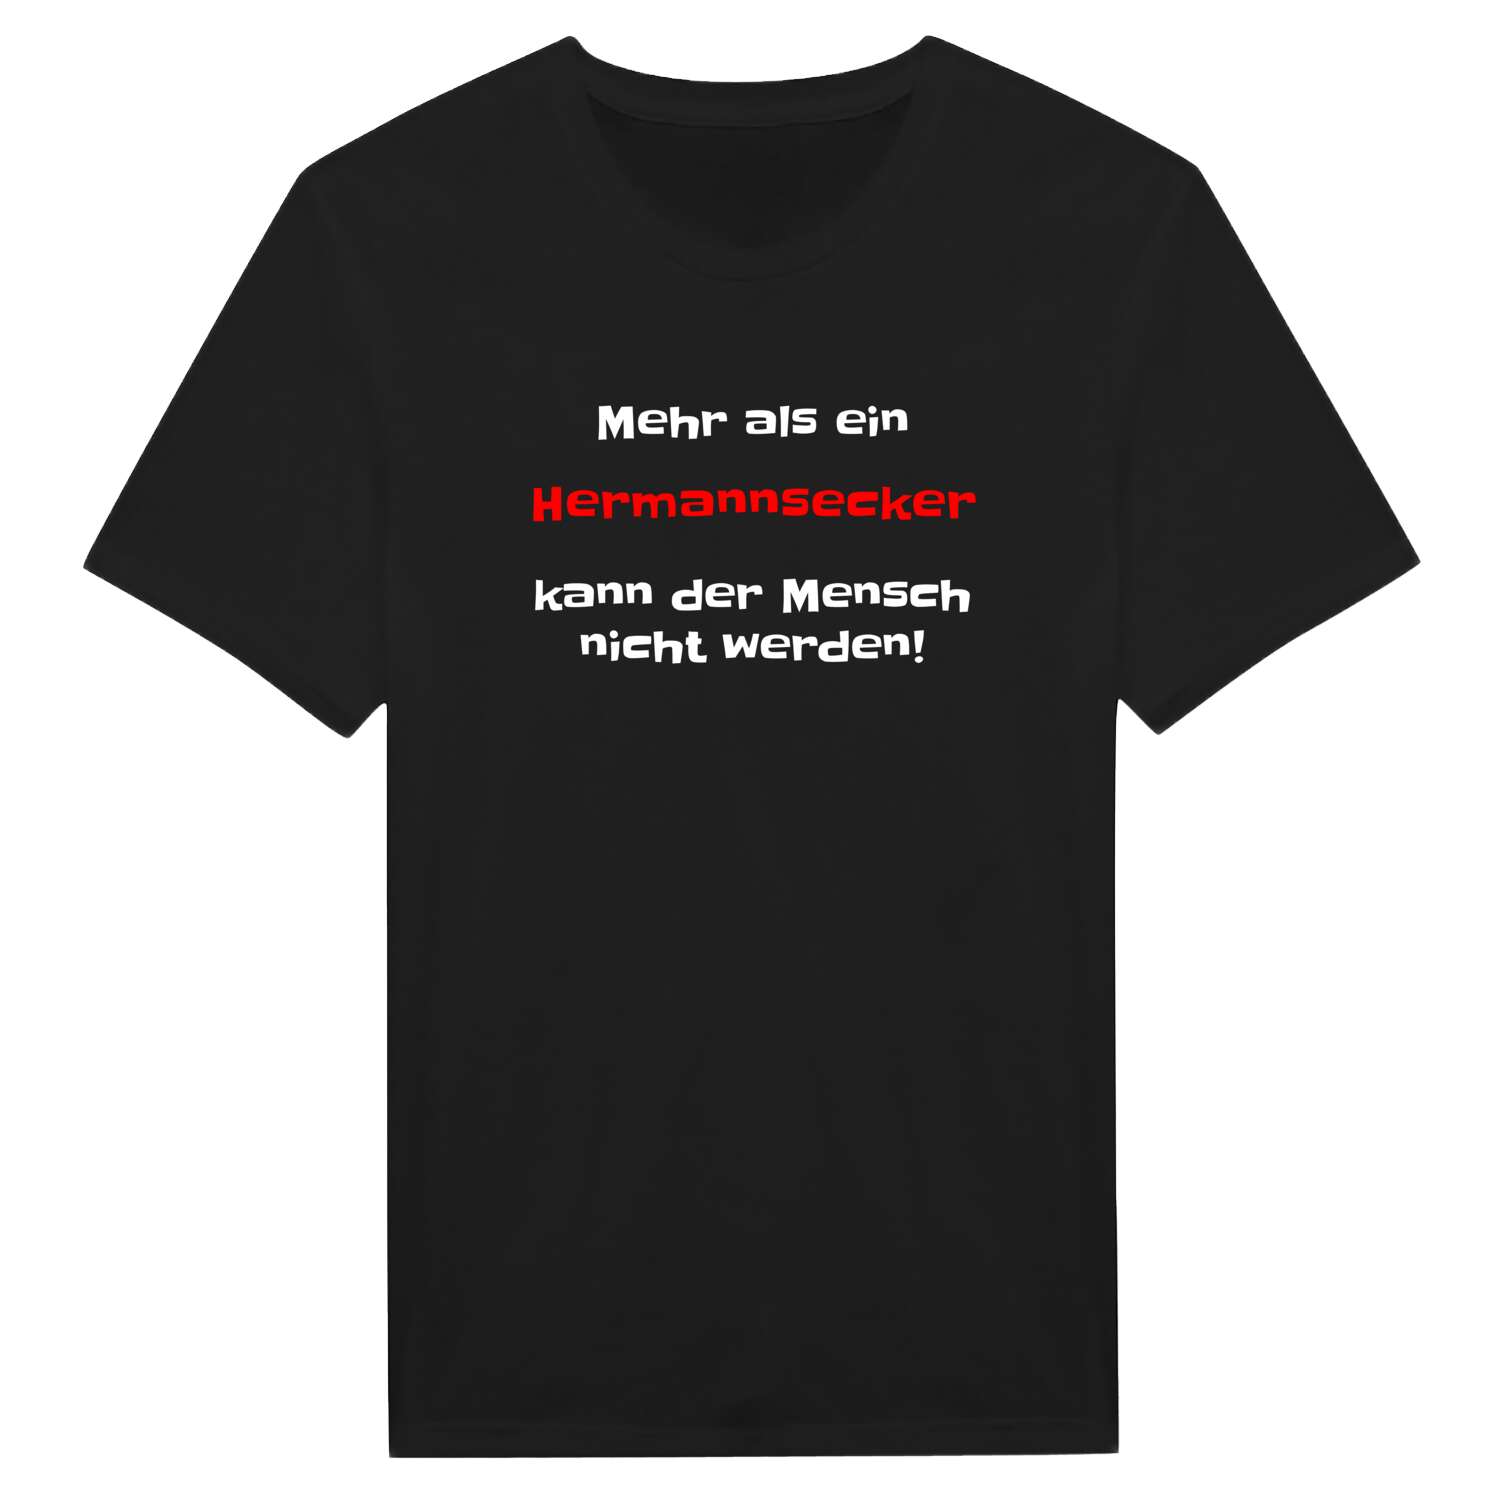 Hermannseck T-Shirt »Mehr als ein«